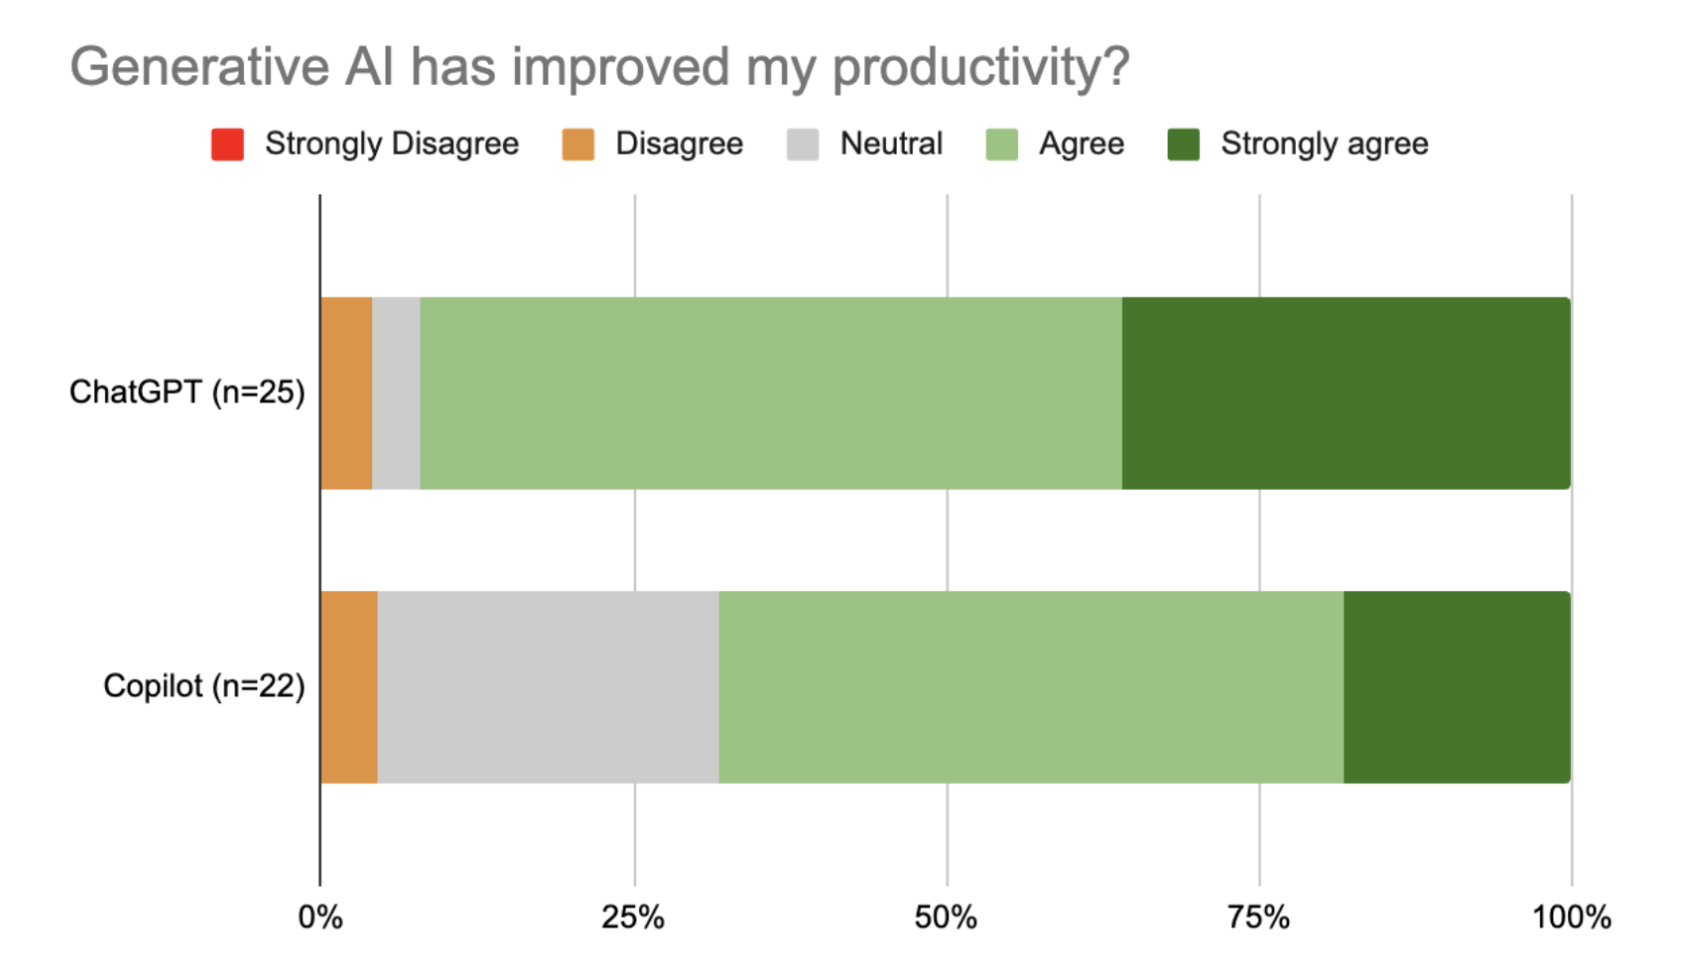 GenAI has improved productivity